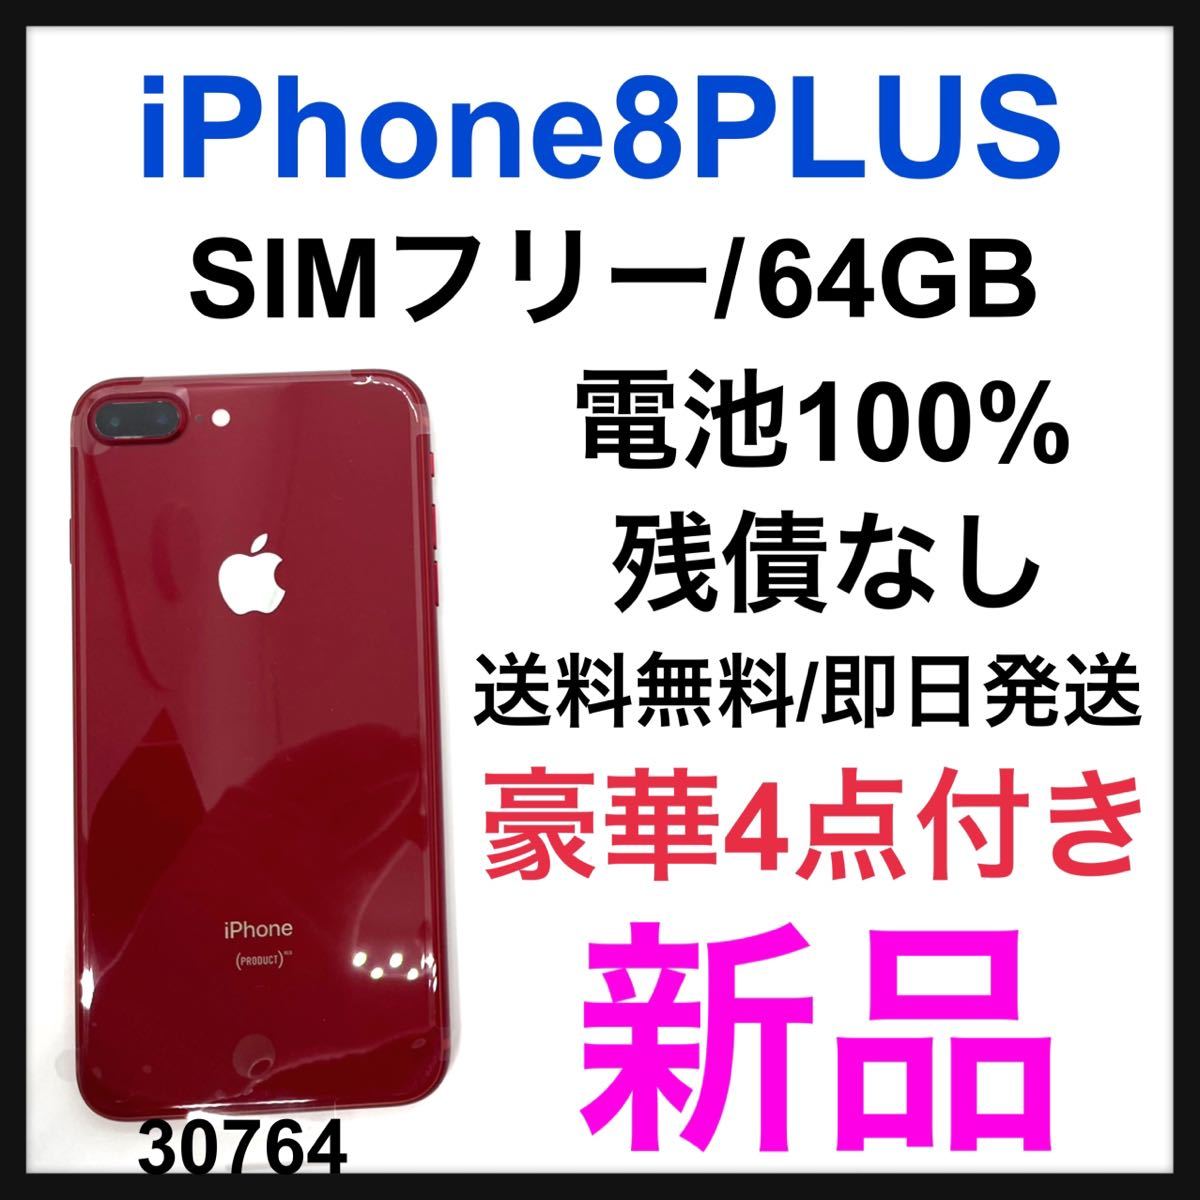 新品 iPhone 8 PLUS 64 GB SIMフリー Red 本体-